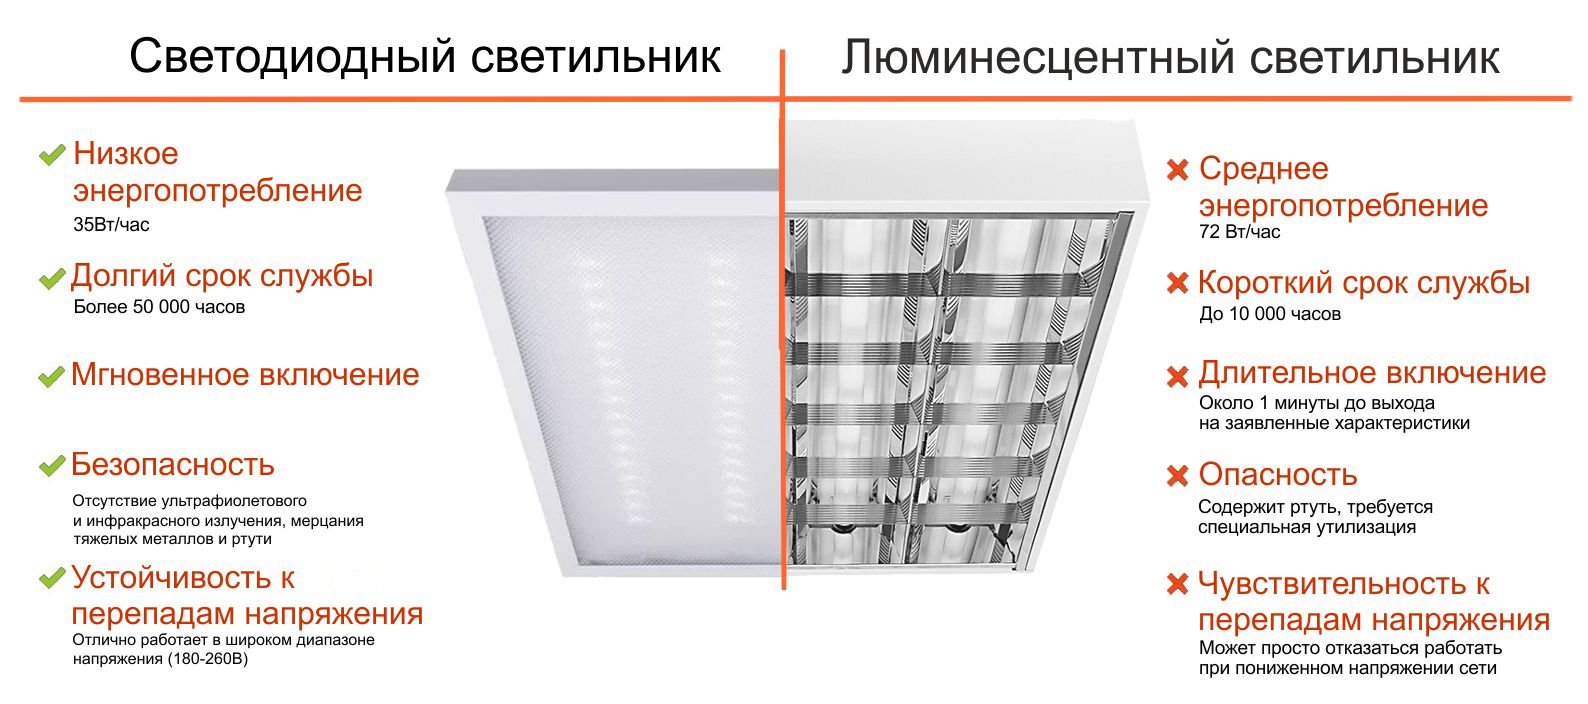 Как сделать светодиодное освещение для дома? советы- обзор и плюсы и минусы и какие лучше выбрать лампы? обзор +видео